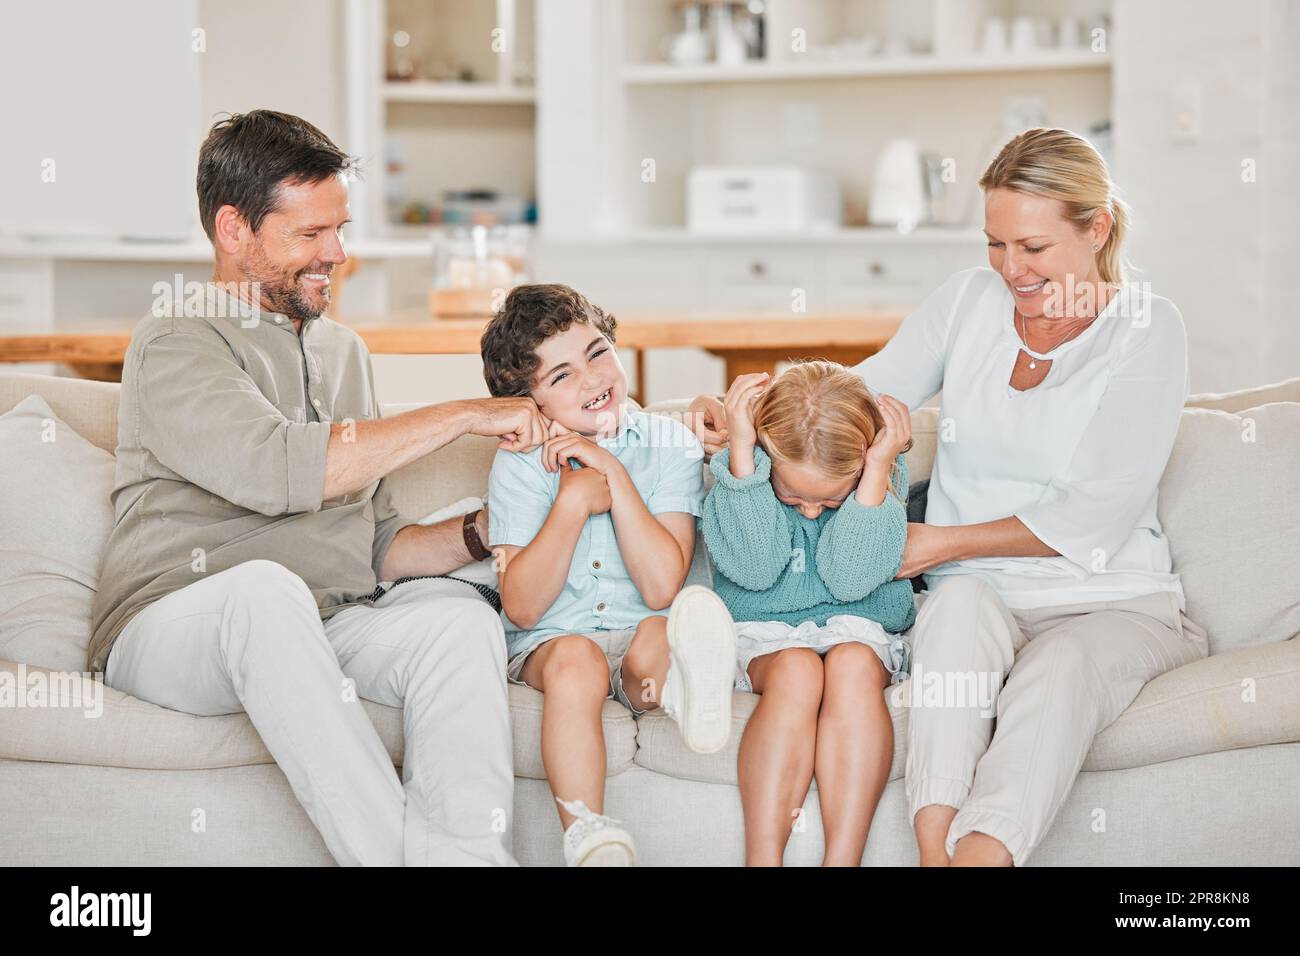 Kitzeln, kitzeln. Ein entzückender kleiner Junge und ein Mädchen, das von ihren Eltern auf dem Sofa zu Hause gekitzelt wird. Stockfoto